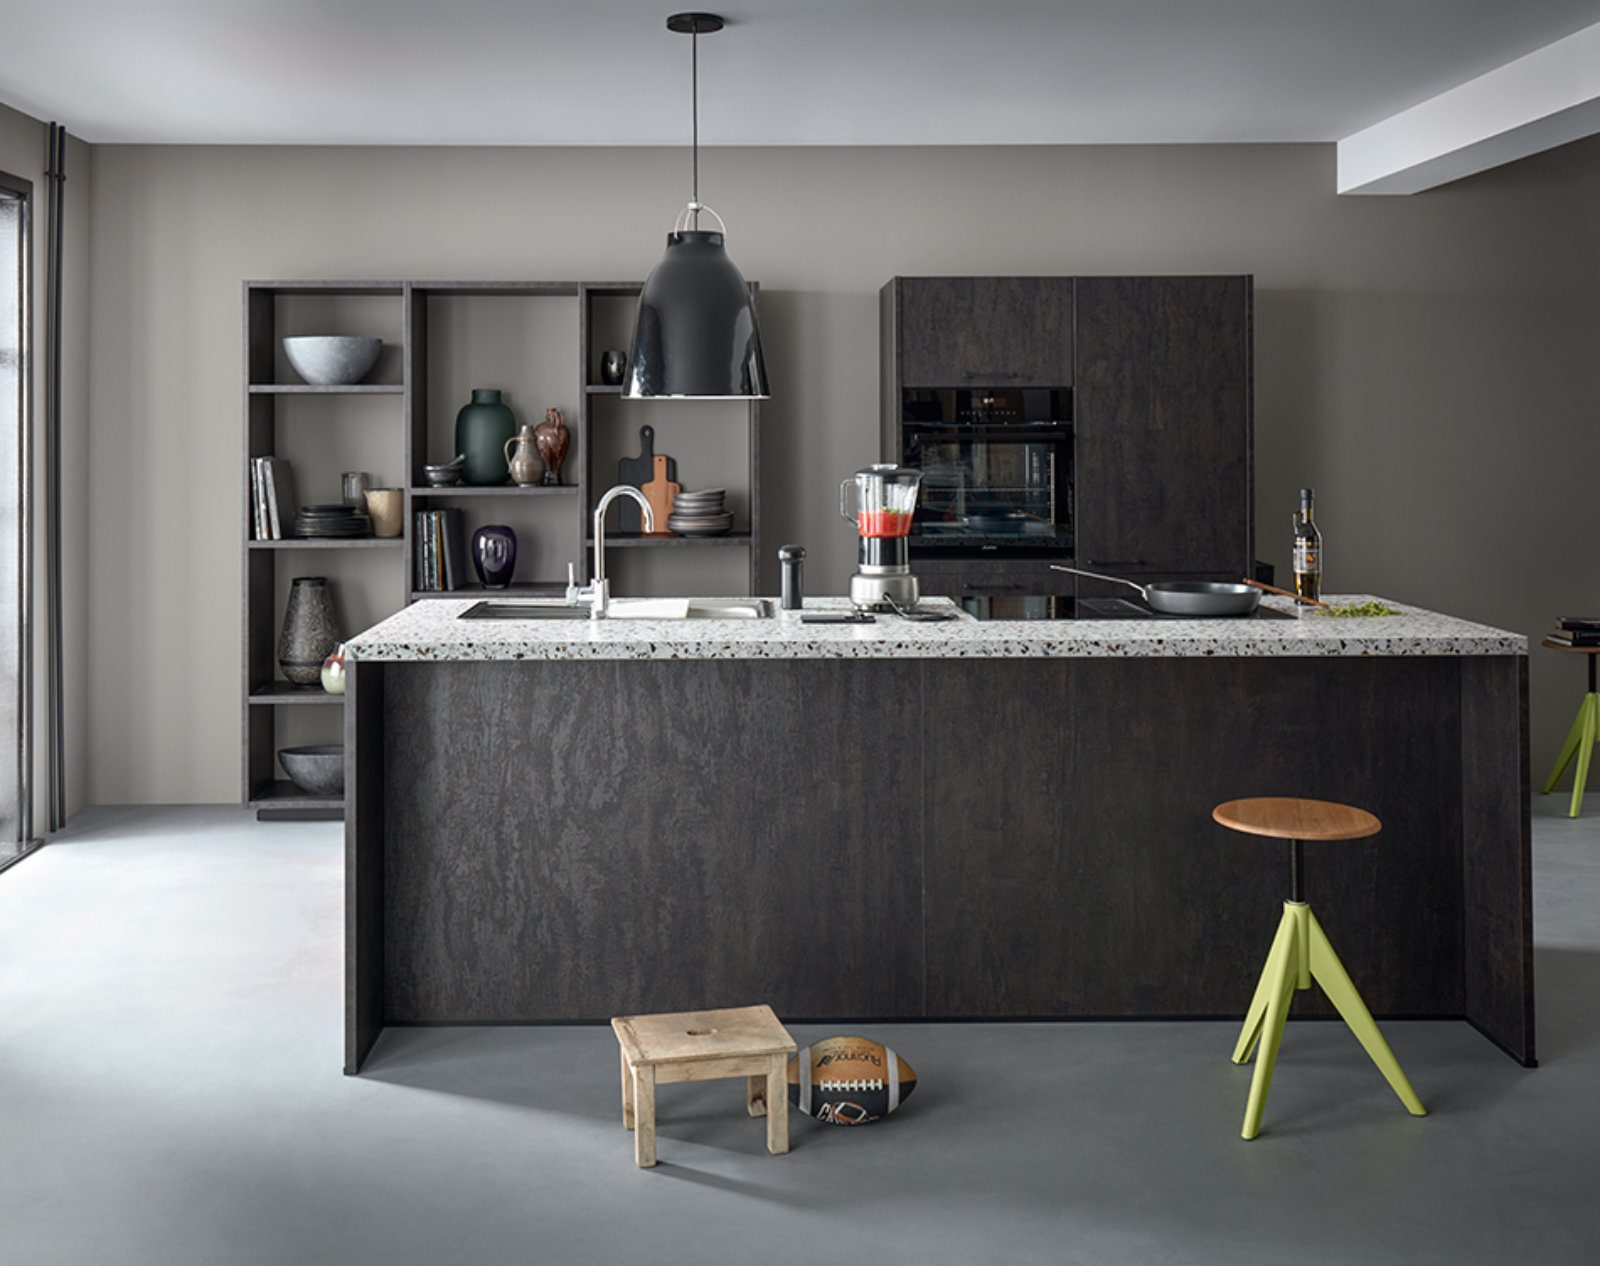 Schuller Dark Open Plan Kitchen With Island 2 | Lux Interior, Macclesfield